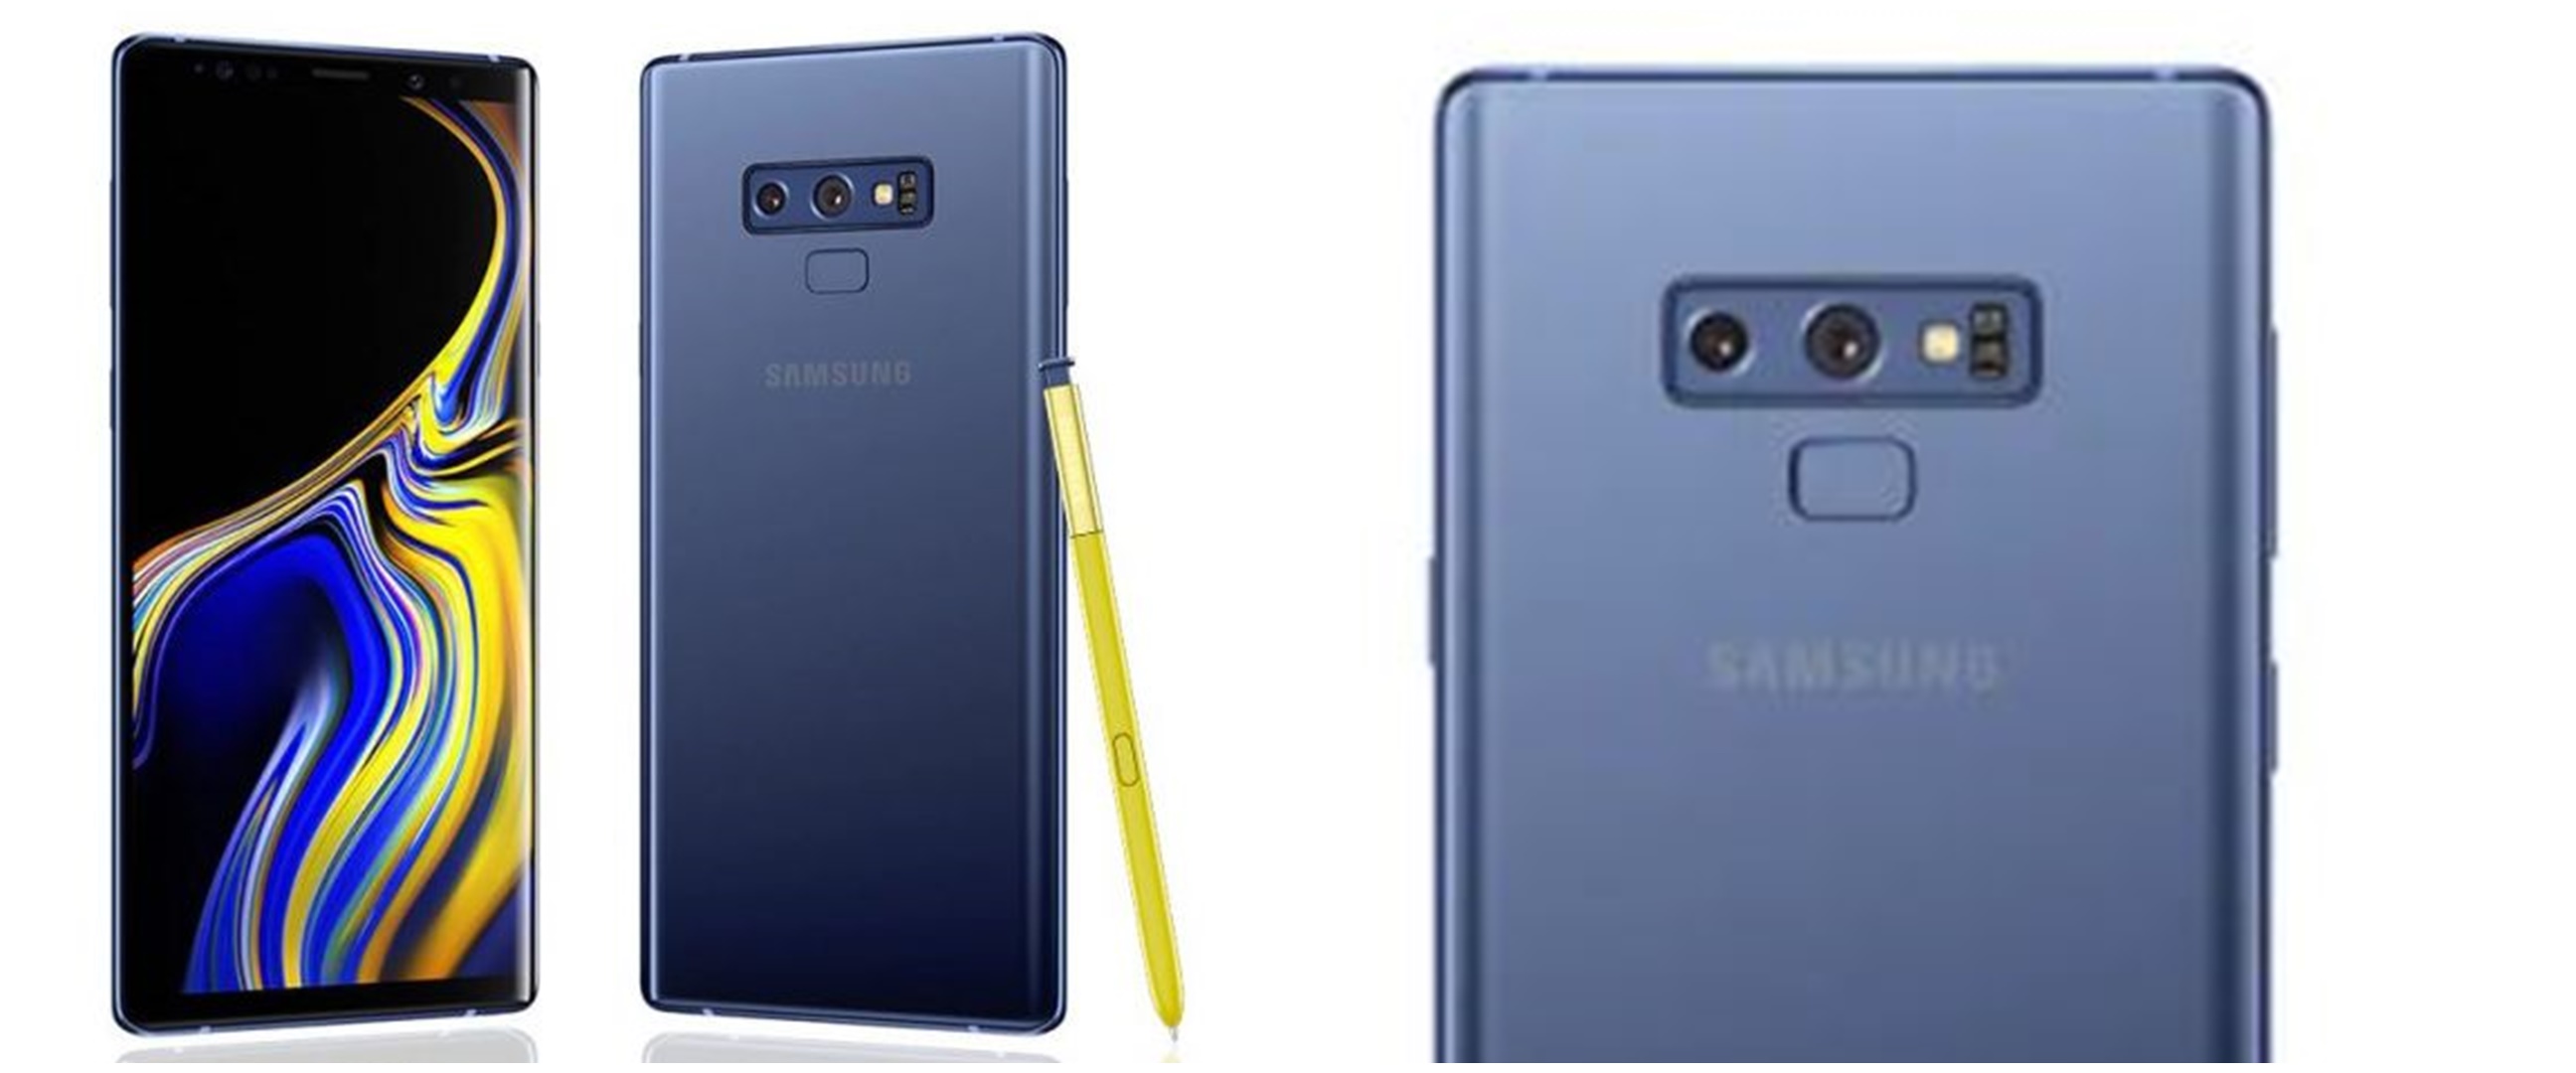 Harga Samsung Note 9 serta spesifikasi, kelebihan, dan kekurangan